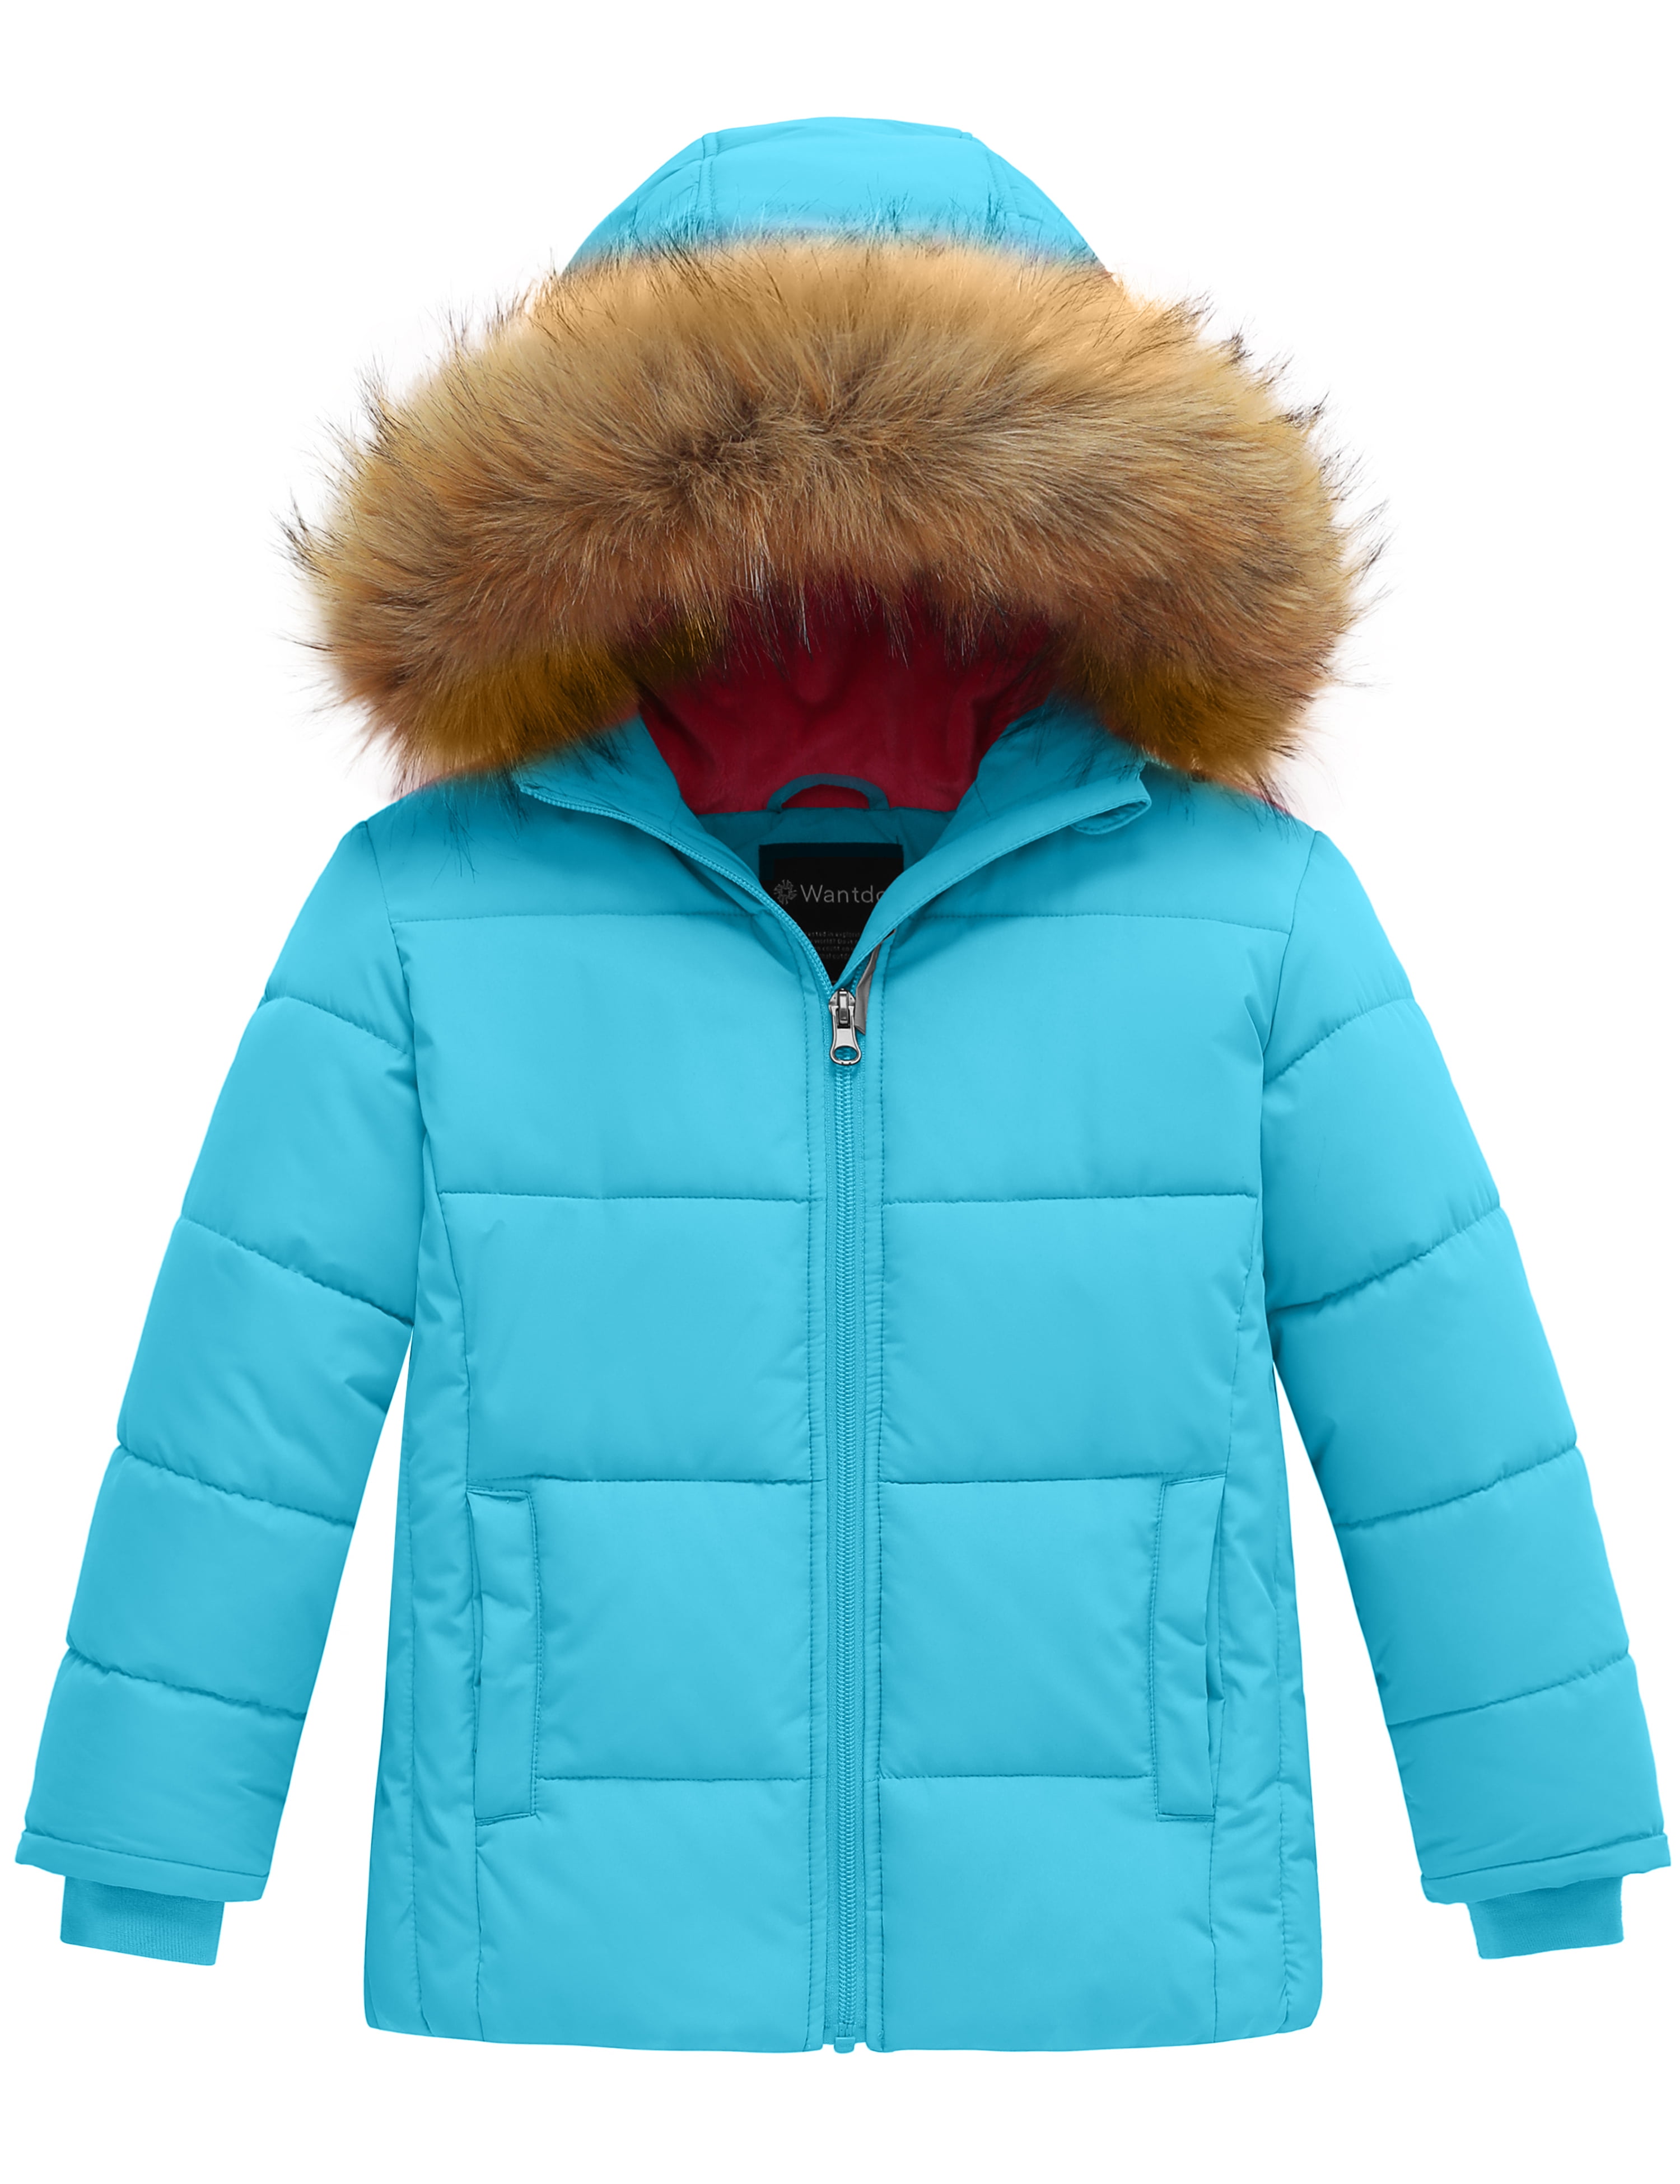 Wantdo Boy's Warm Winter Coat Waterproof Down Parka Thicken Filling Puffer Jacket with Hood 